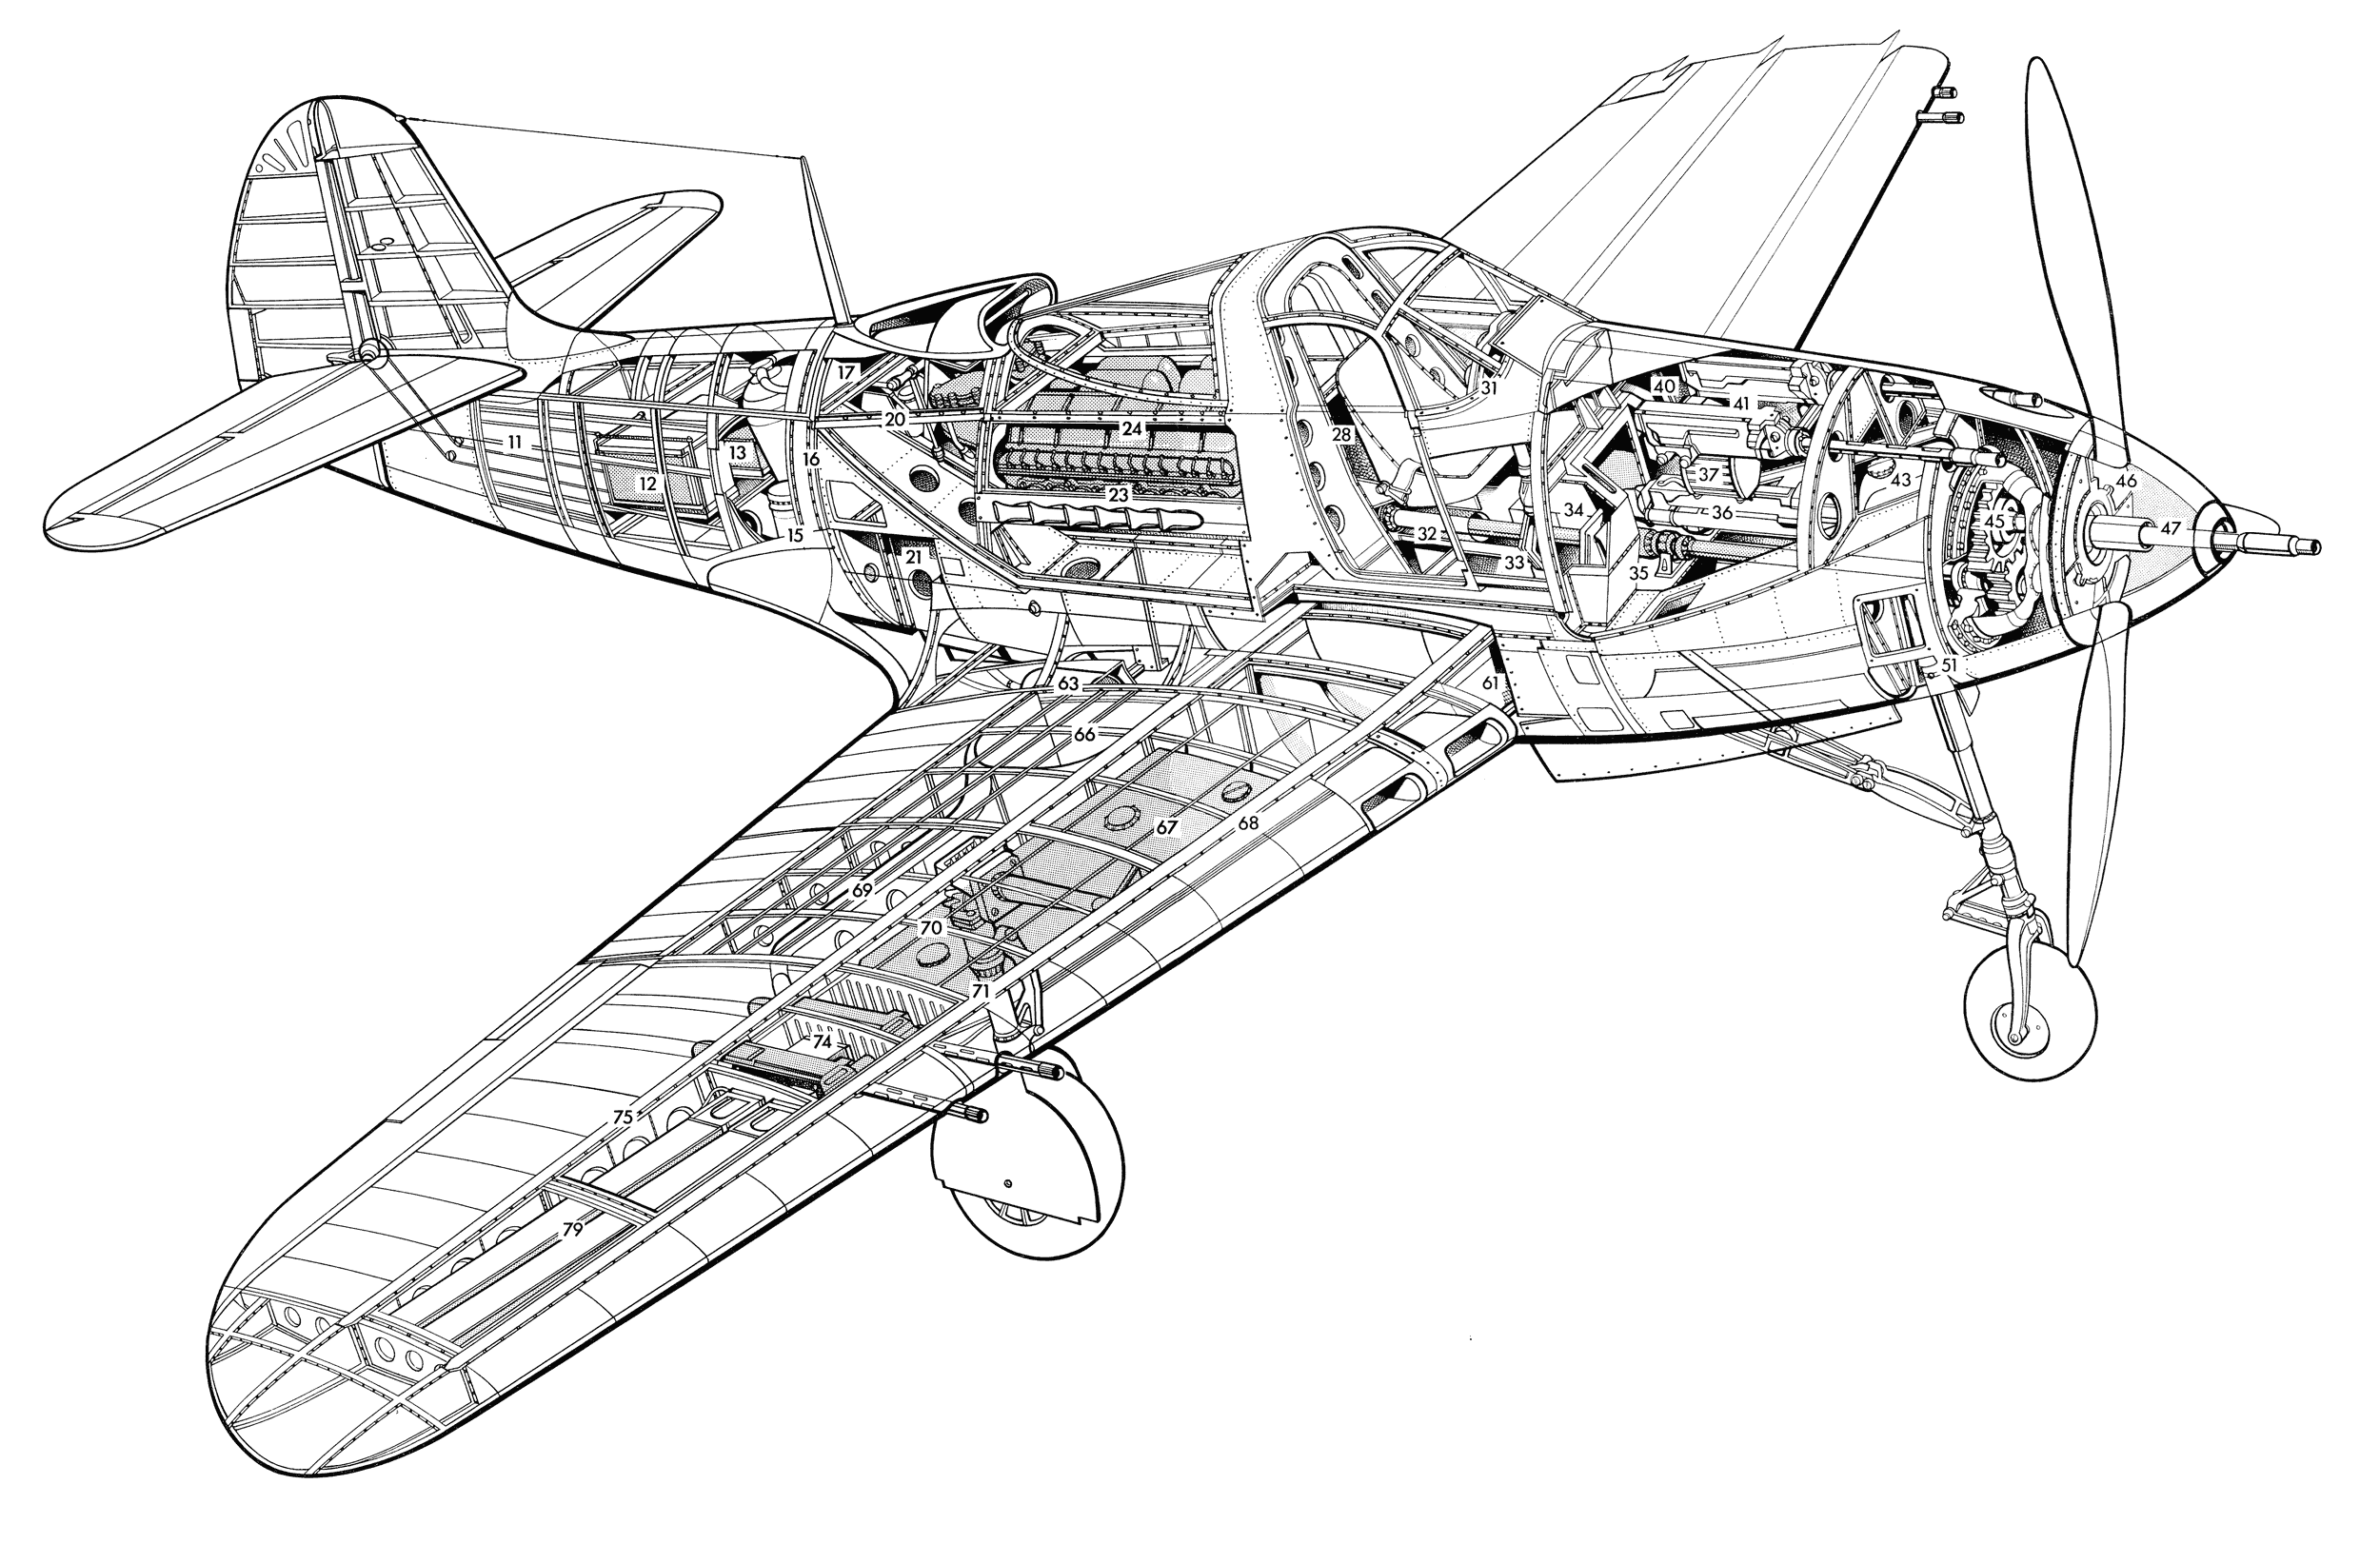 Аэрокобра, ленд-лизовский самолет bell p 39 airacobra, истребитель покрышкина, речкалова и гулаева, ттх и вооружение